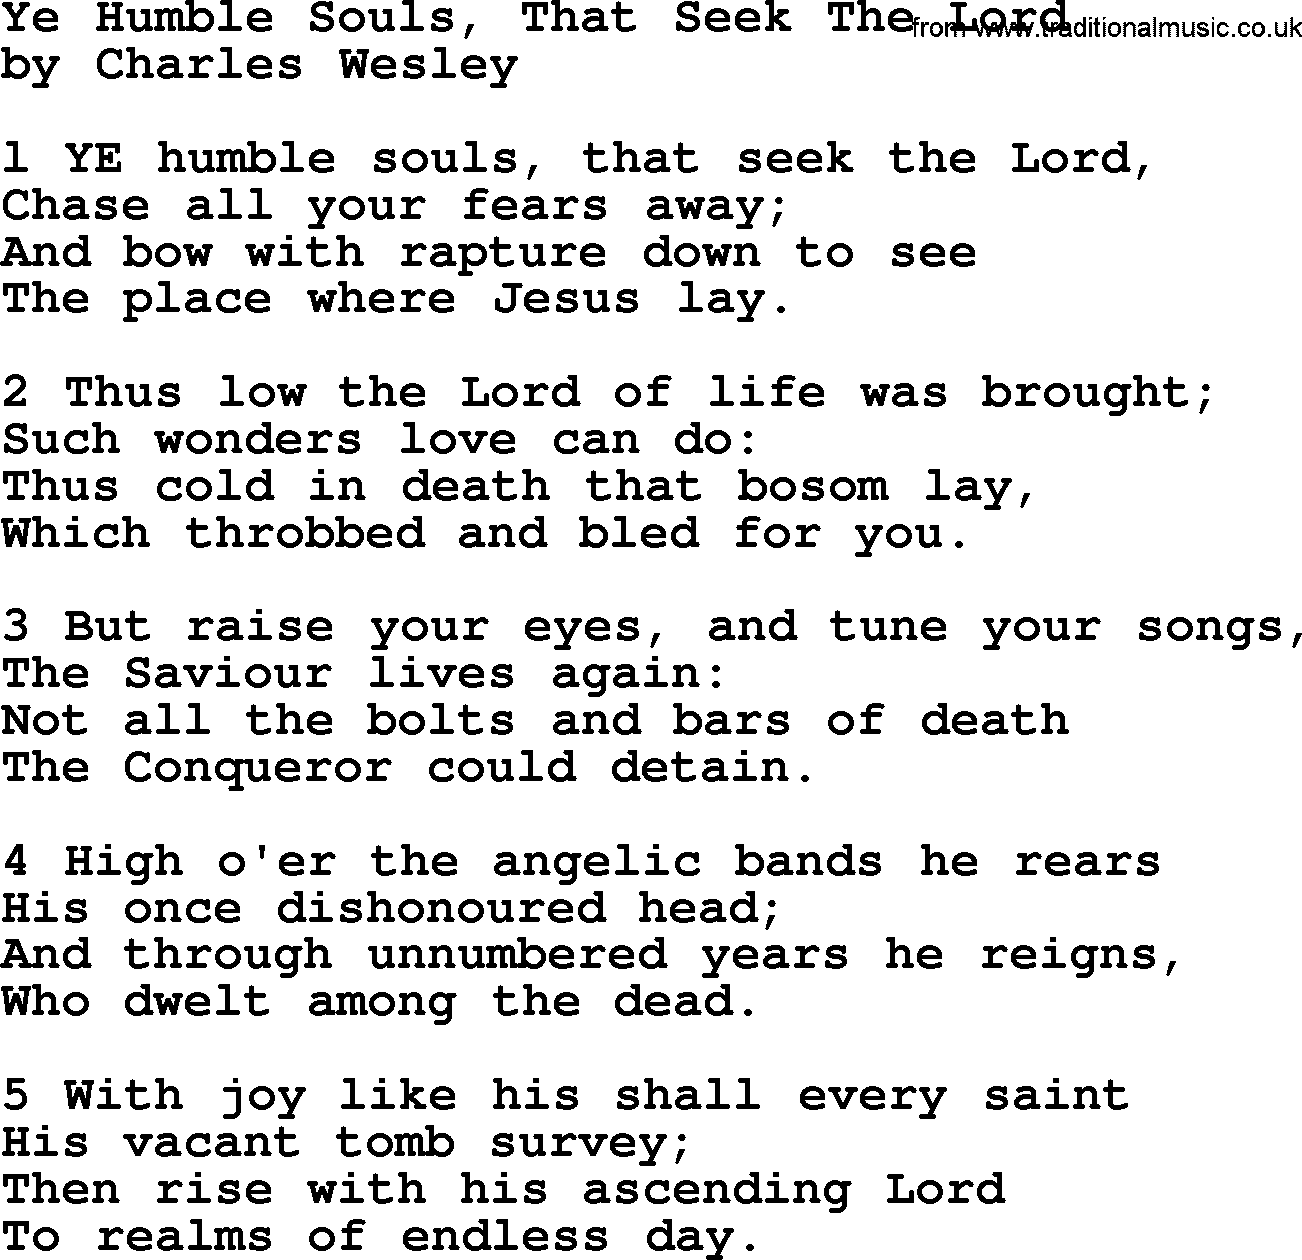 Charles Wesley hymn: Ye Humble Souls, That Seek The Lord, lyrics